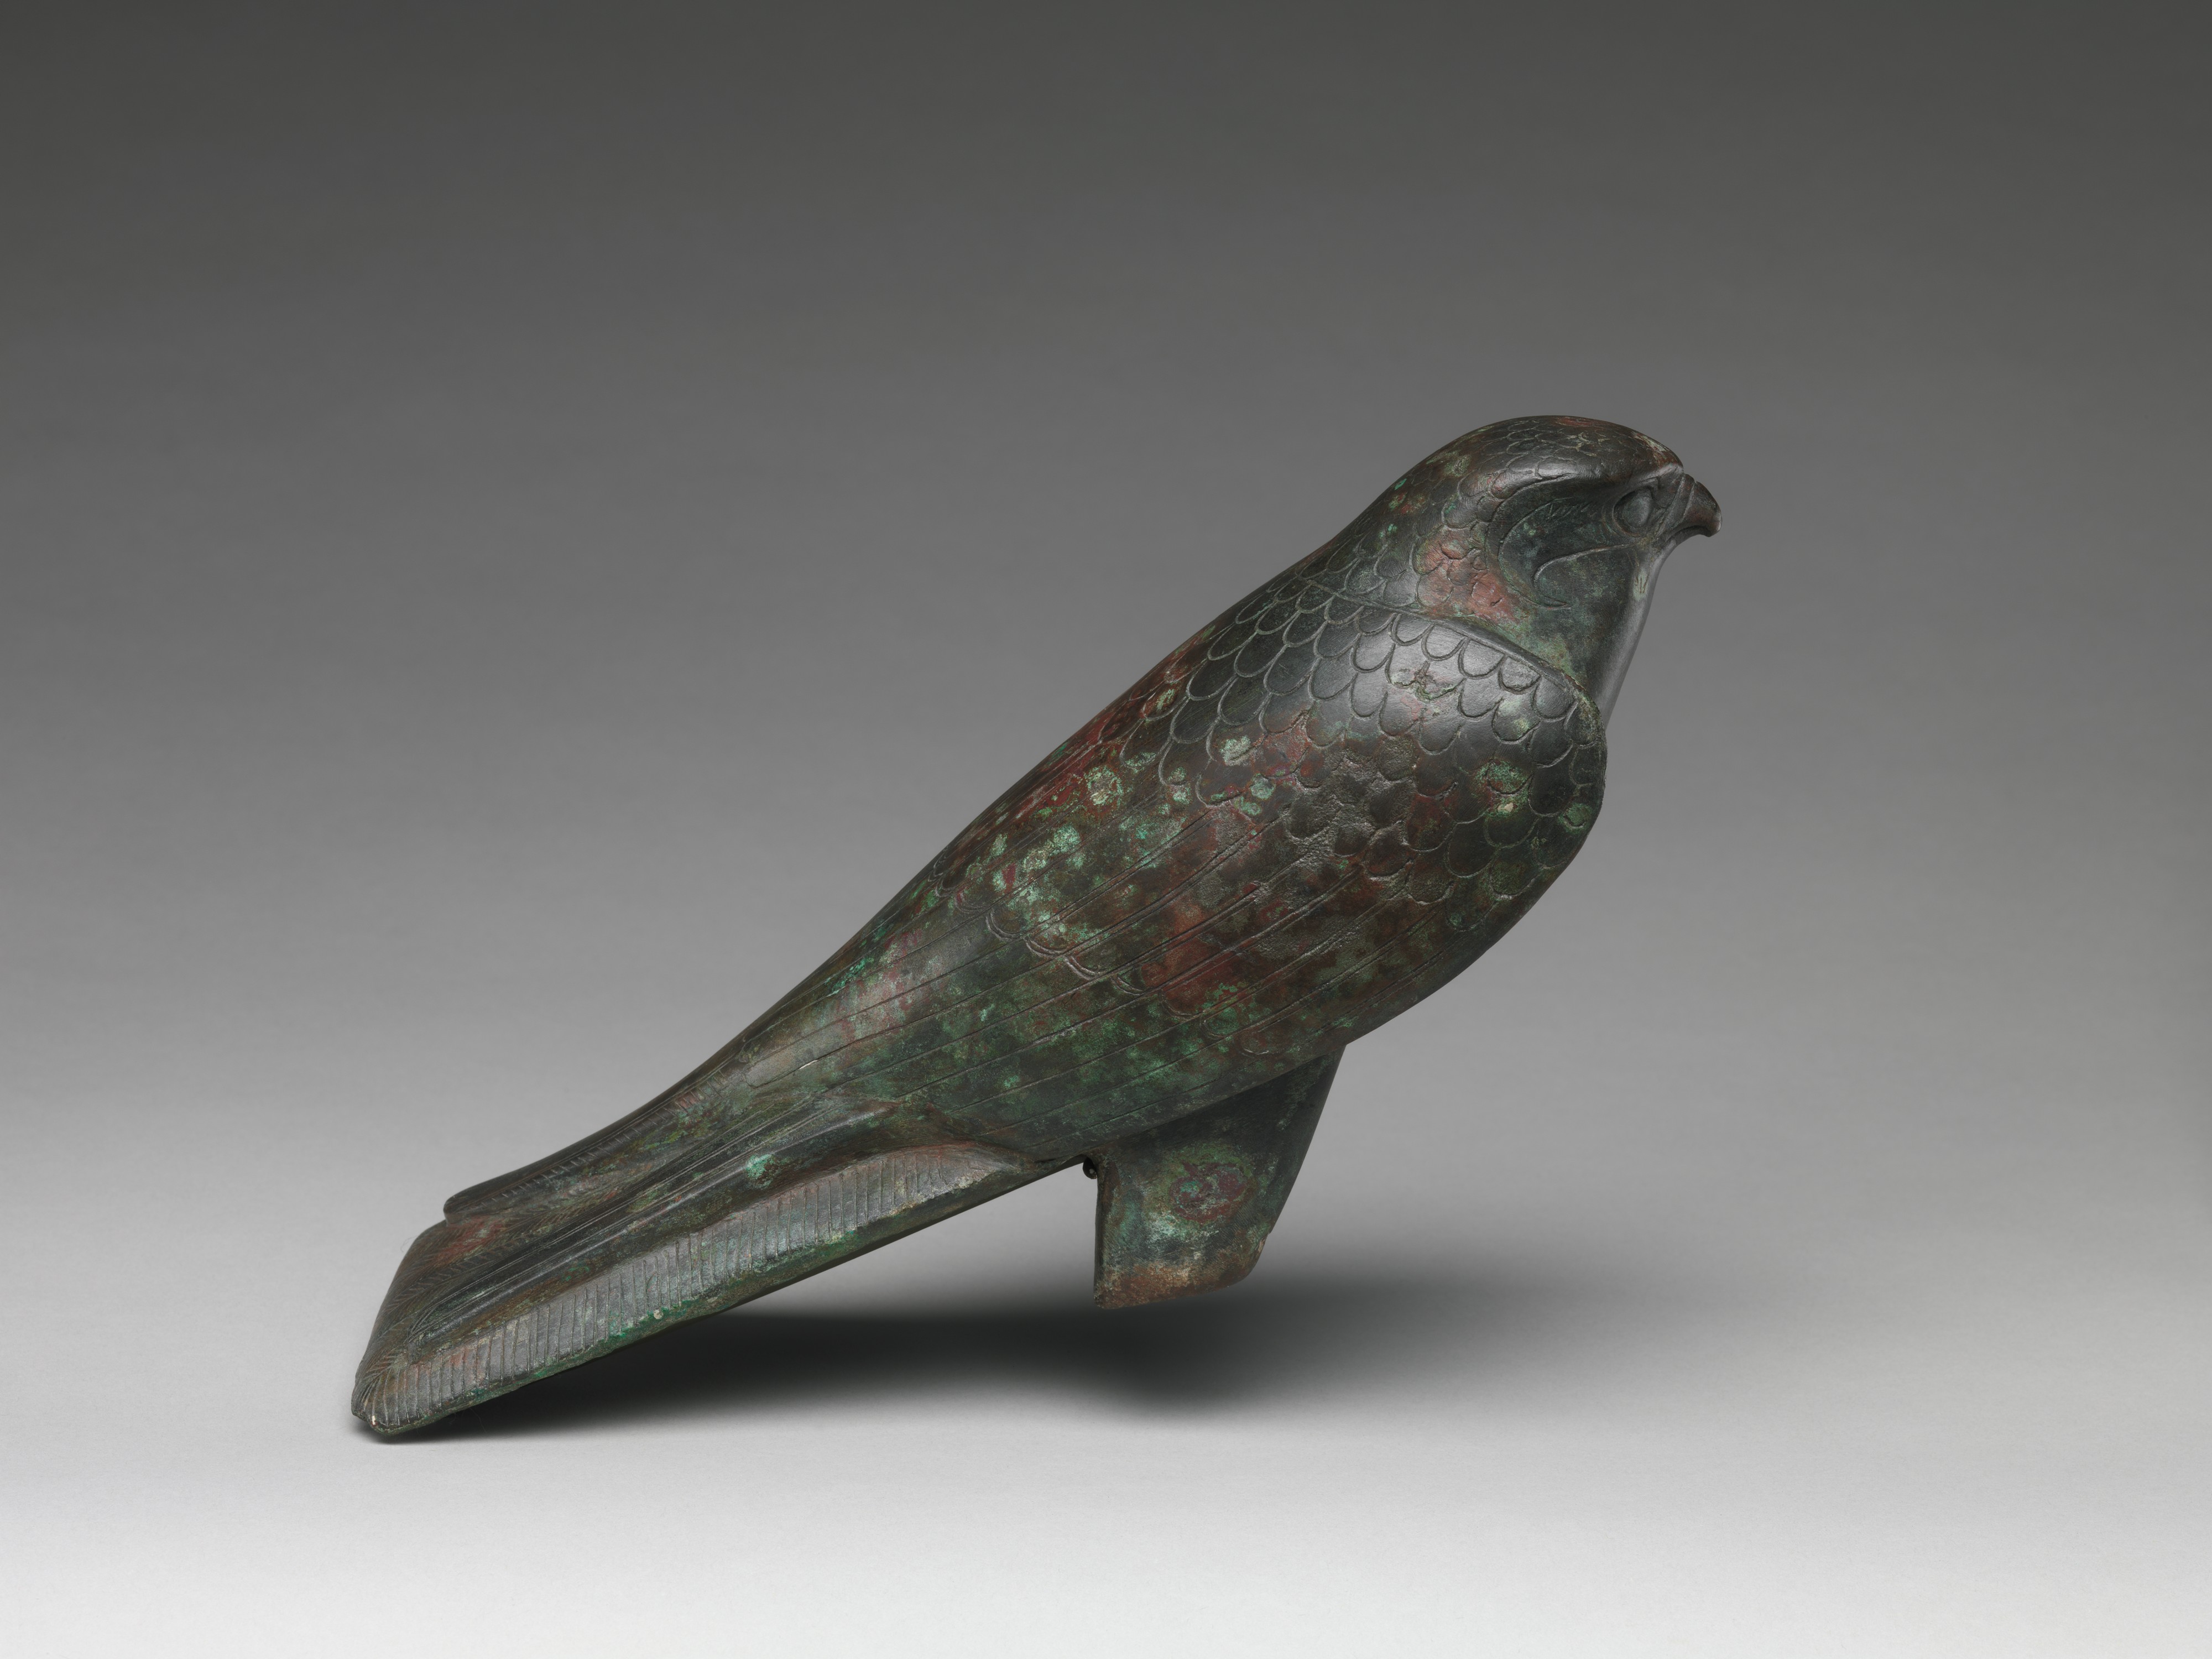 作为圣兽石棺的猎鹰雕像 by 未知艺术家  - 664–30 B.C. - 23.2 x 3.3 x 18.1 cm 